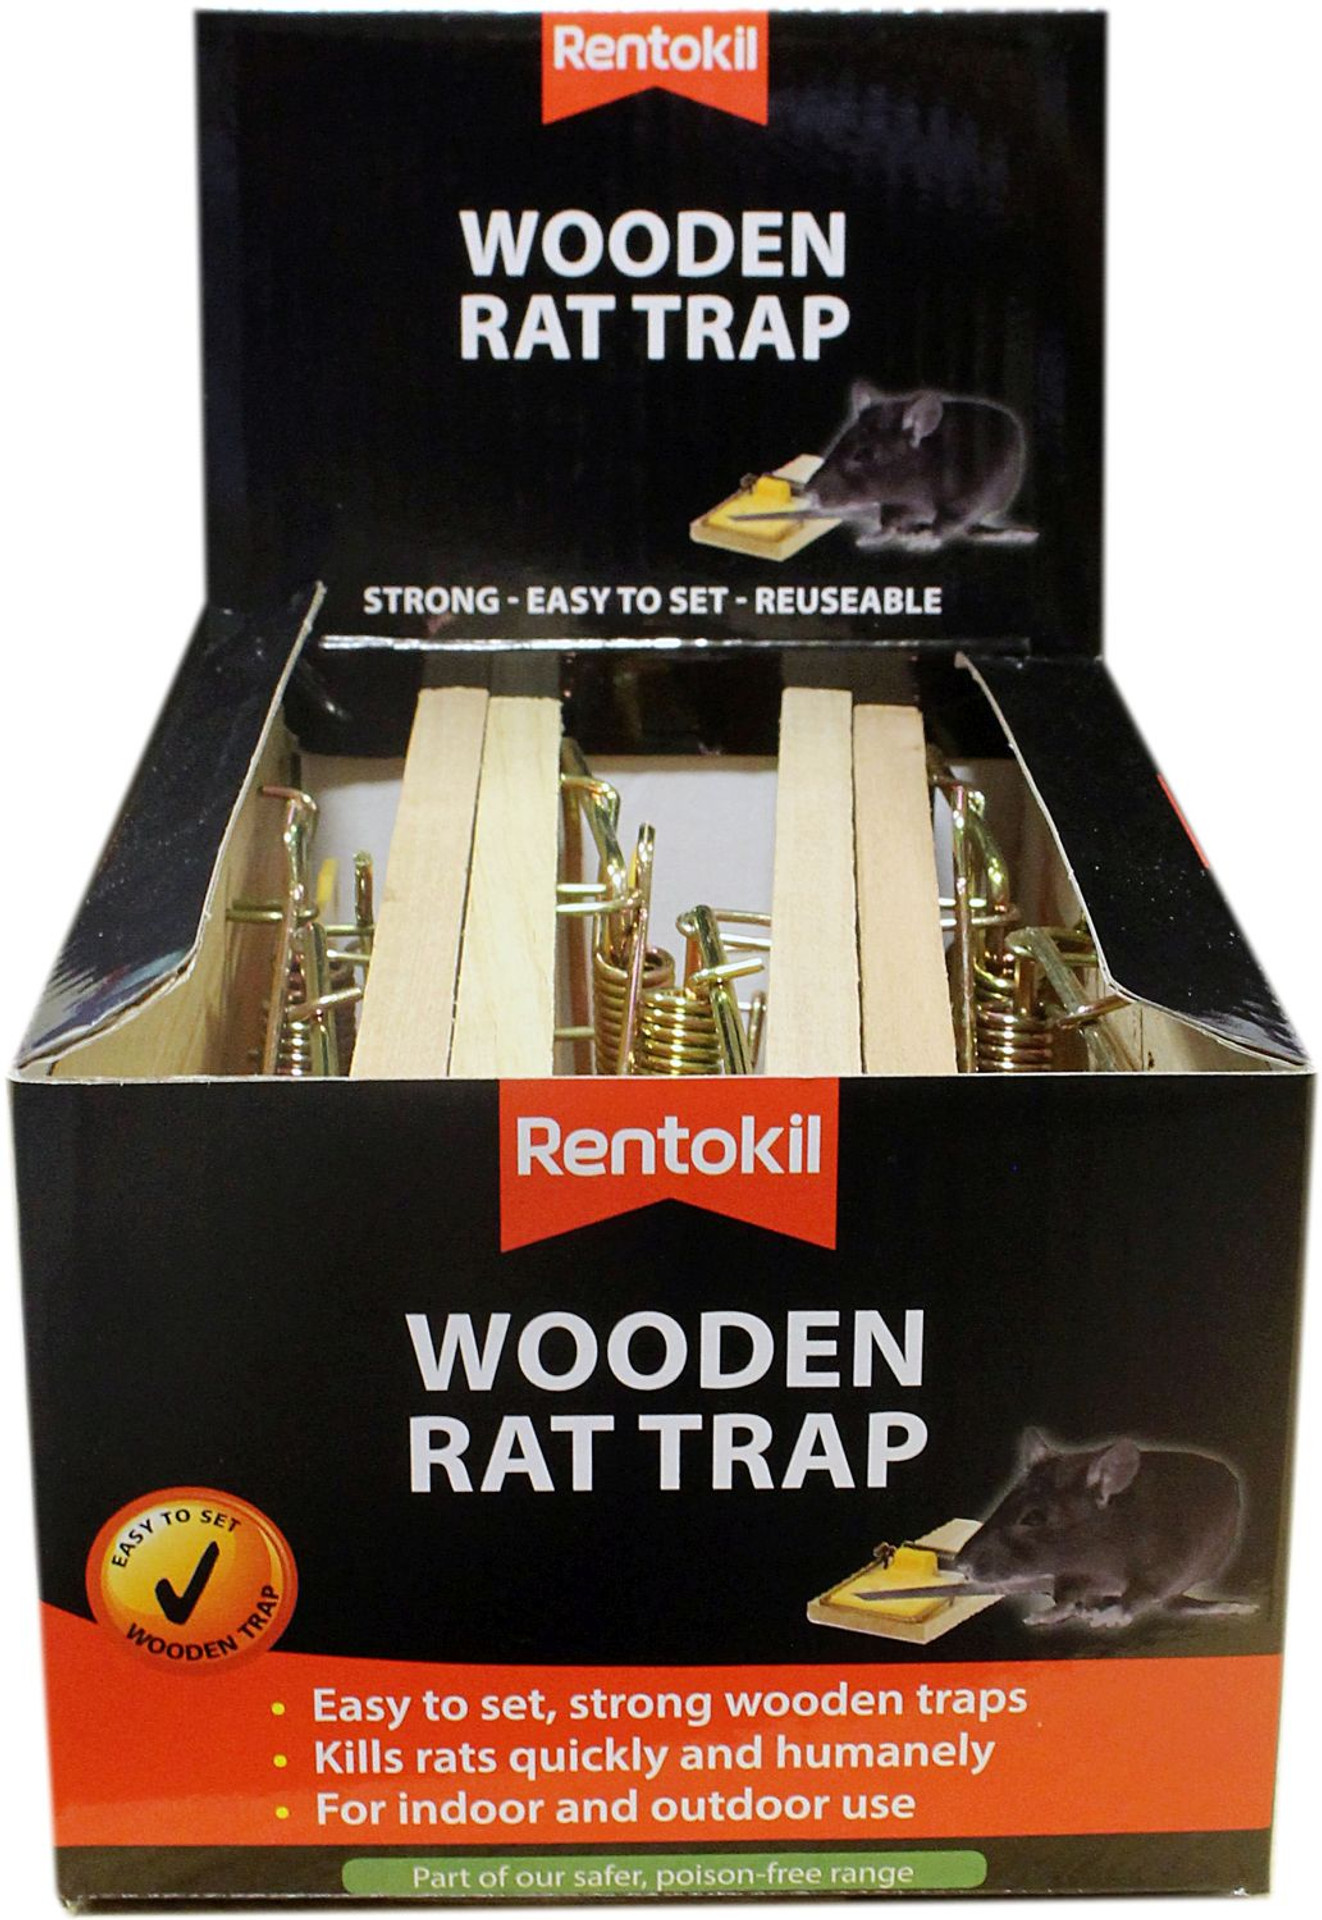 Rentokil Wooden Mouse Trap